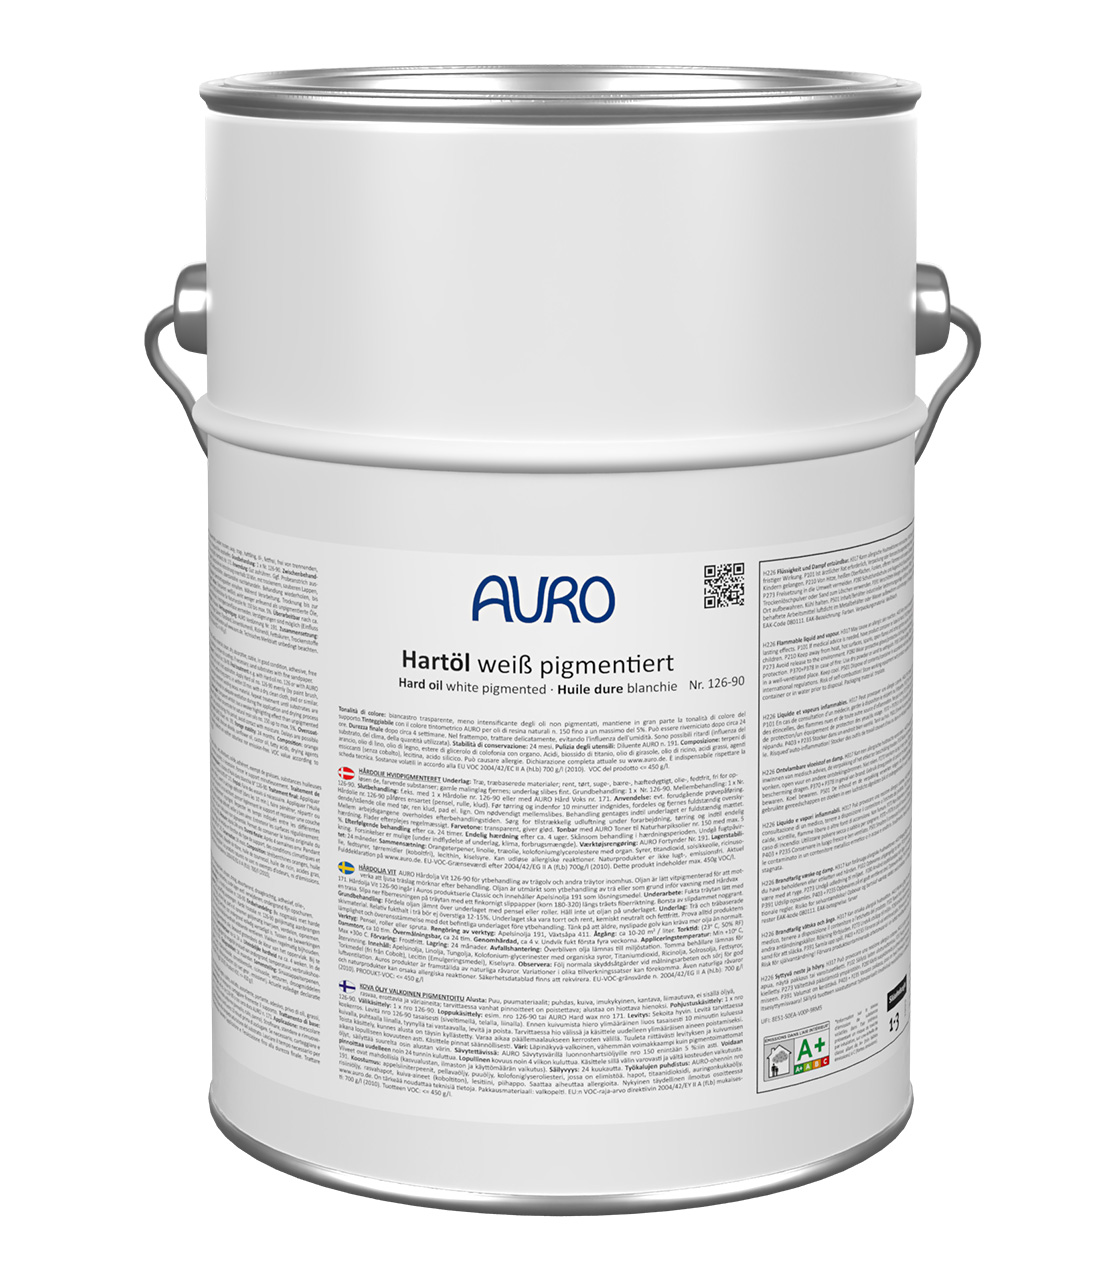 AURO Hartöl-Weiß pigmentiert Nr. 126-90